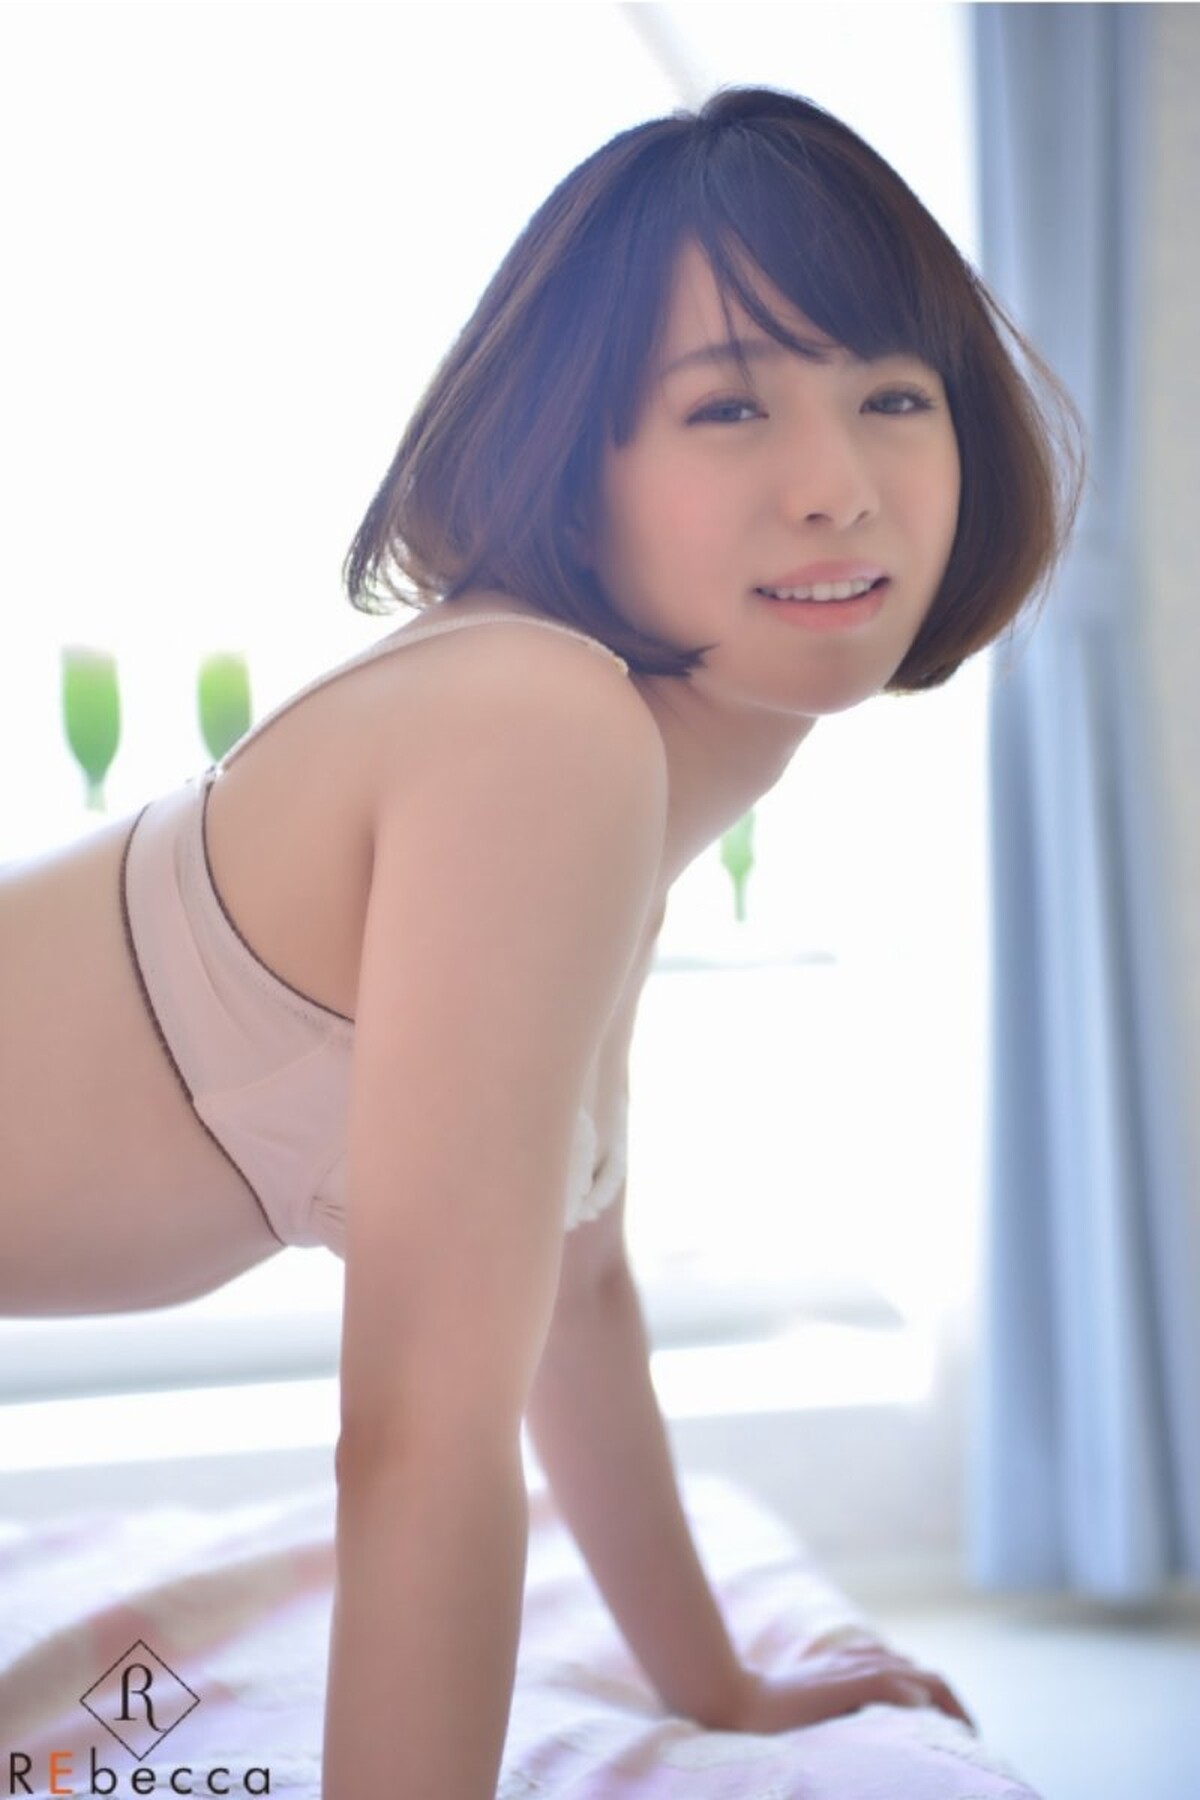 Photobook Sena Nagakura 永倉せな Awakening Beautiful Girl Eros 0024 0474429877.jpg